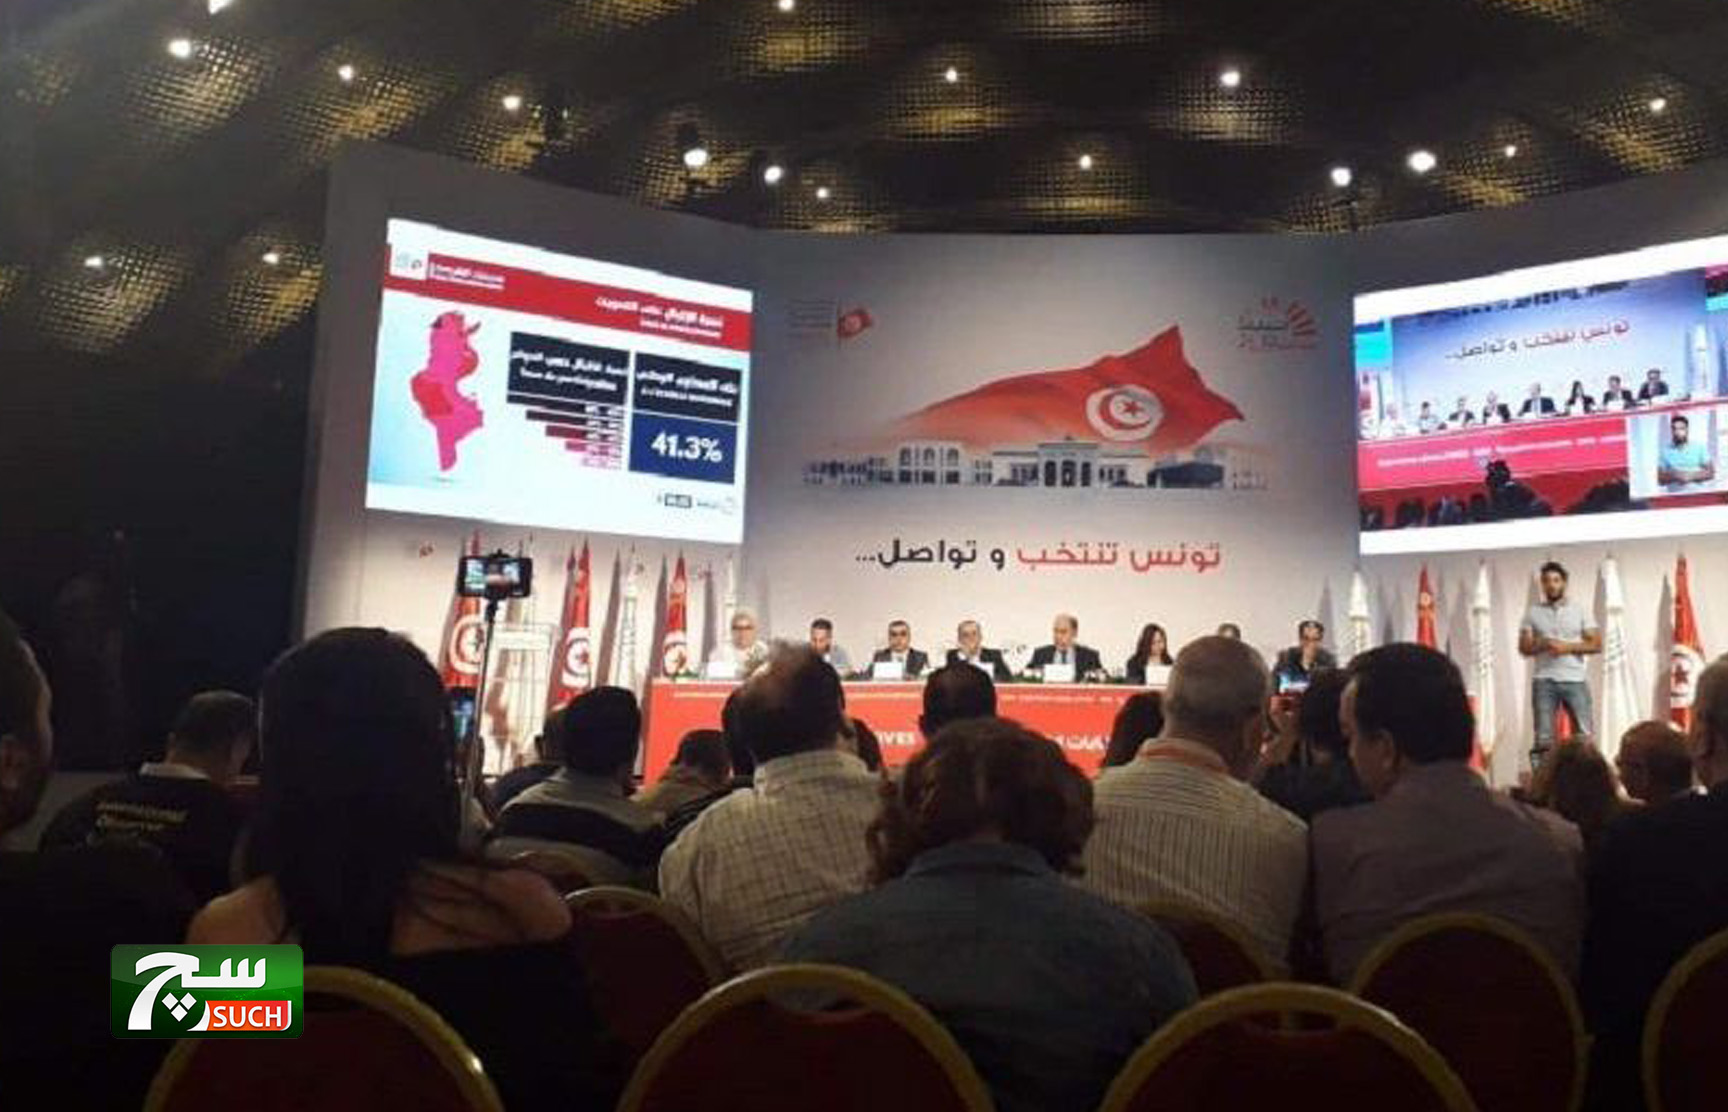 الانتخابات التشريعية التونسية... نسبة مشاركة دون المأمول وهاجس حول تشكيل الحكومة المقبلة